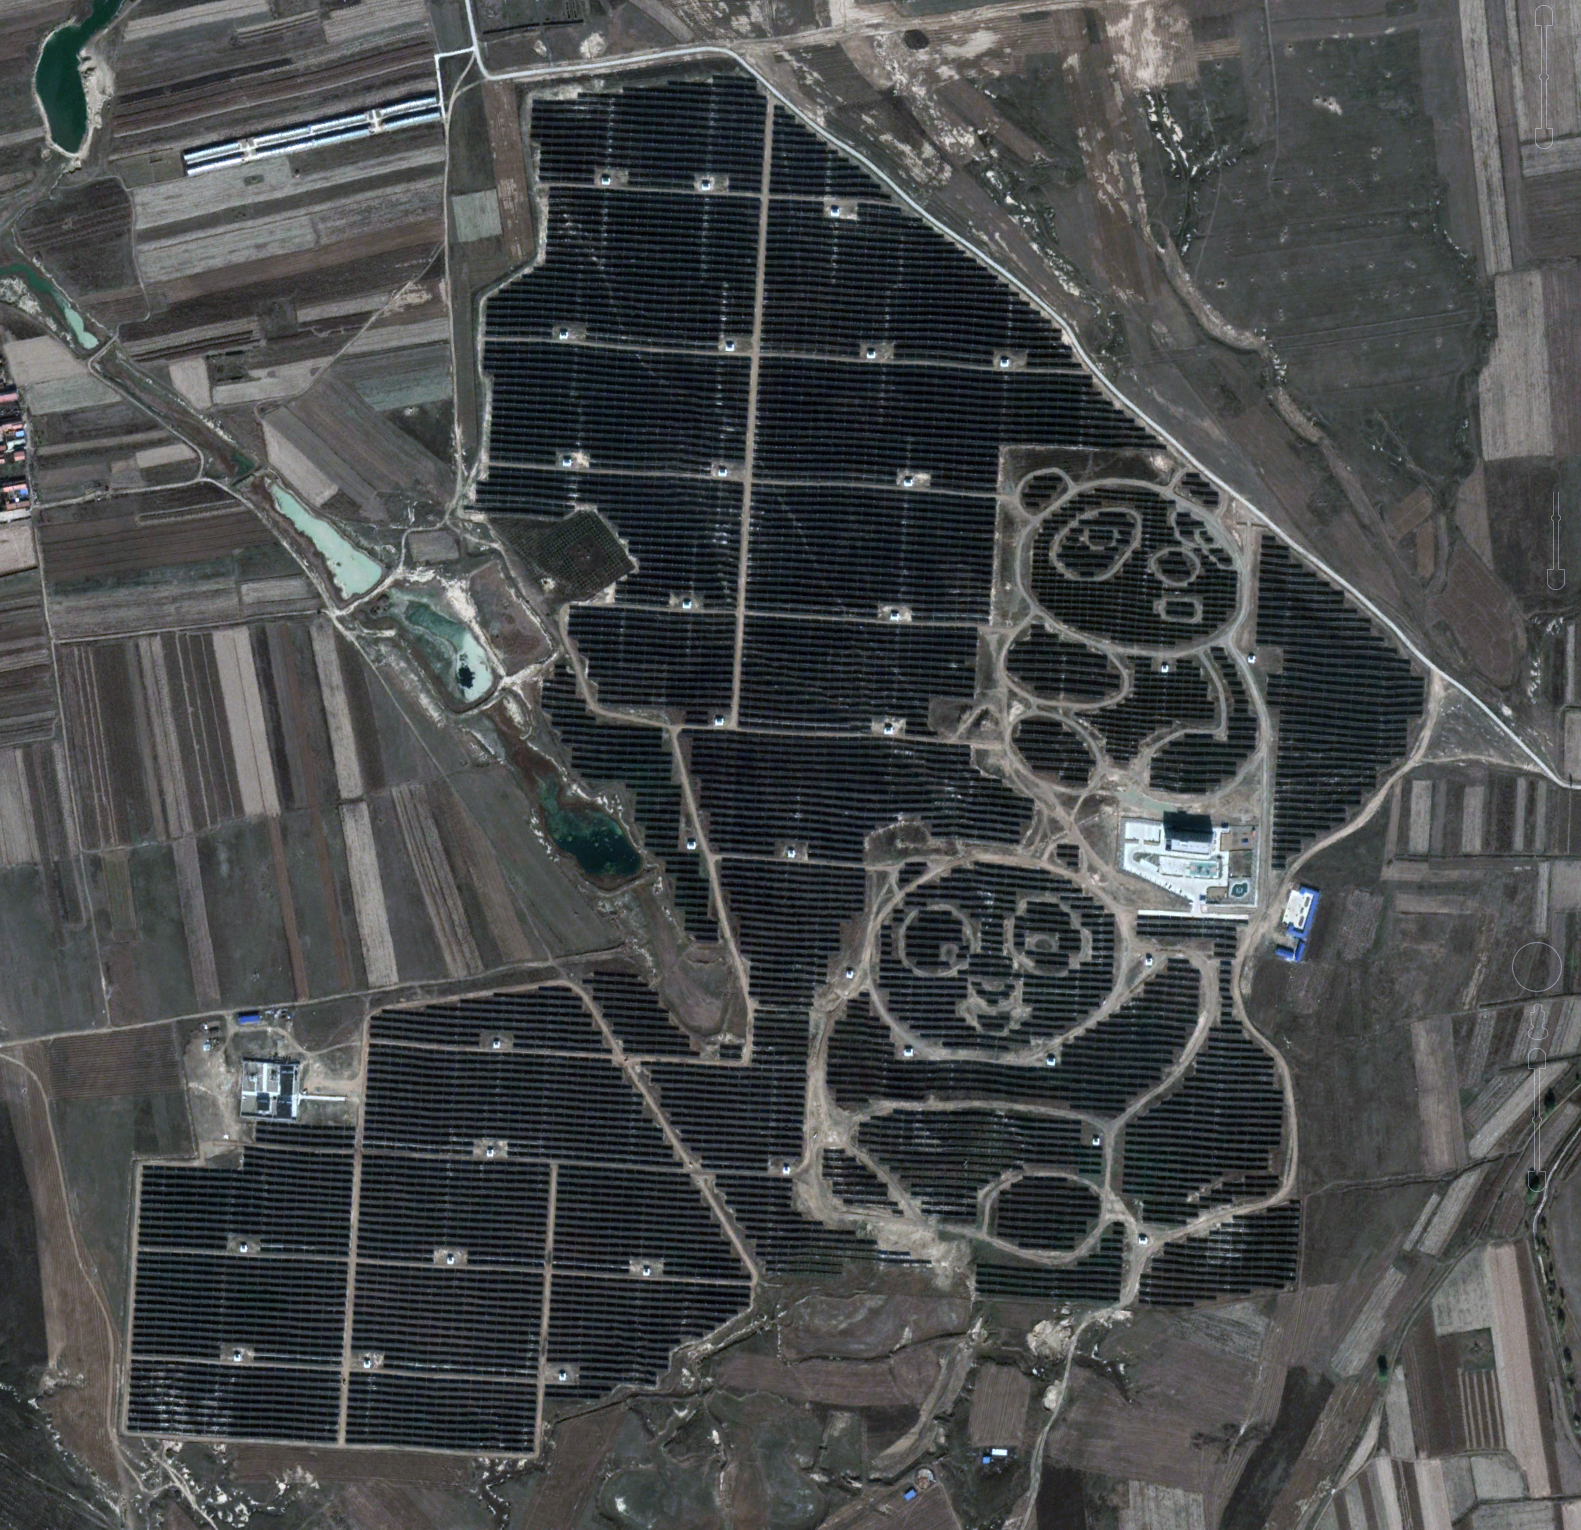 Estación solar de Datong, China ( 39°58'28.75"N, 113°29'9.25"E)